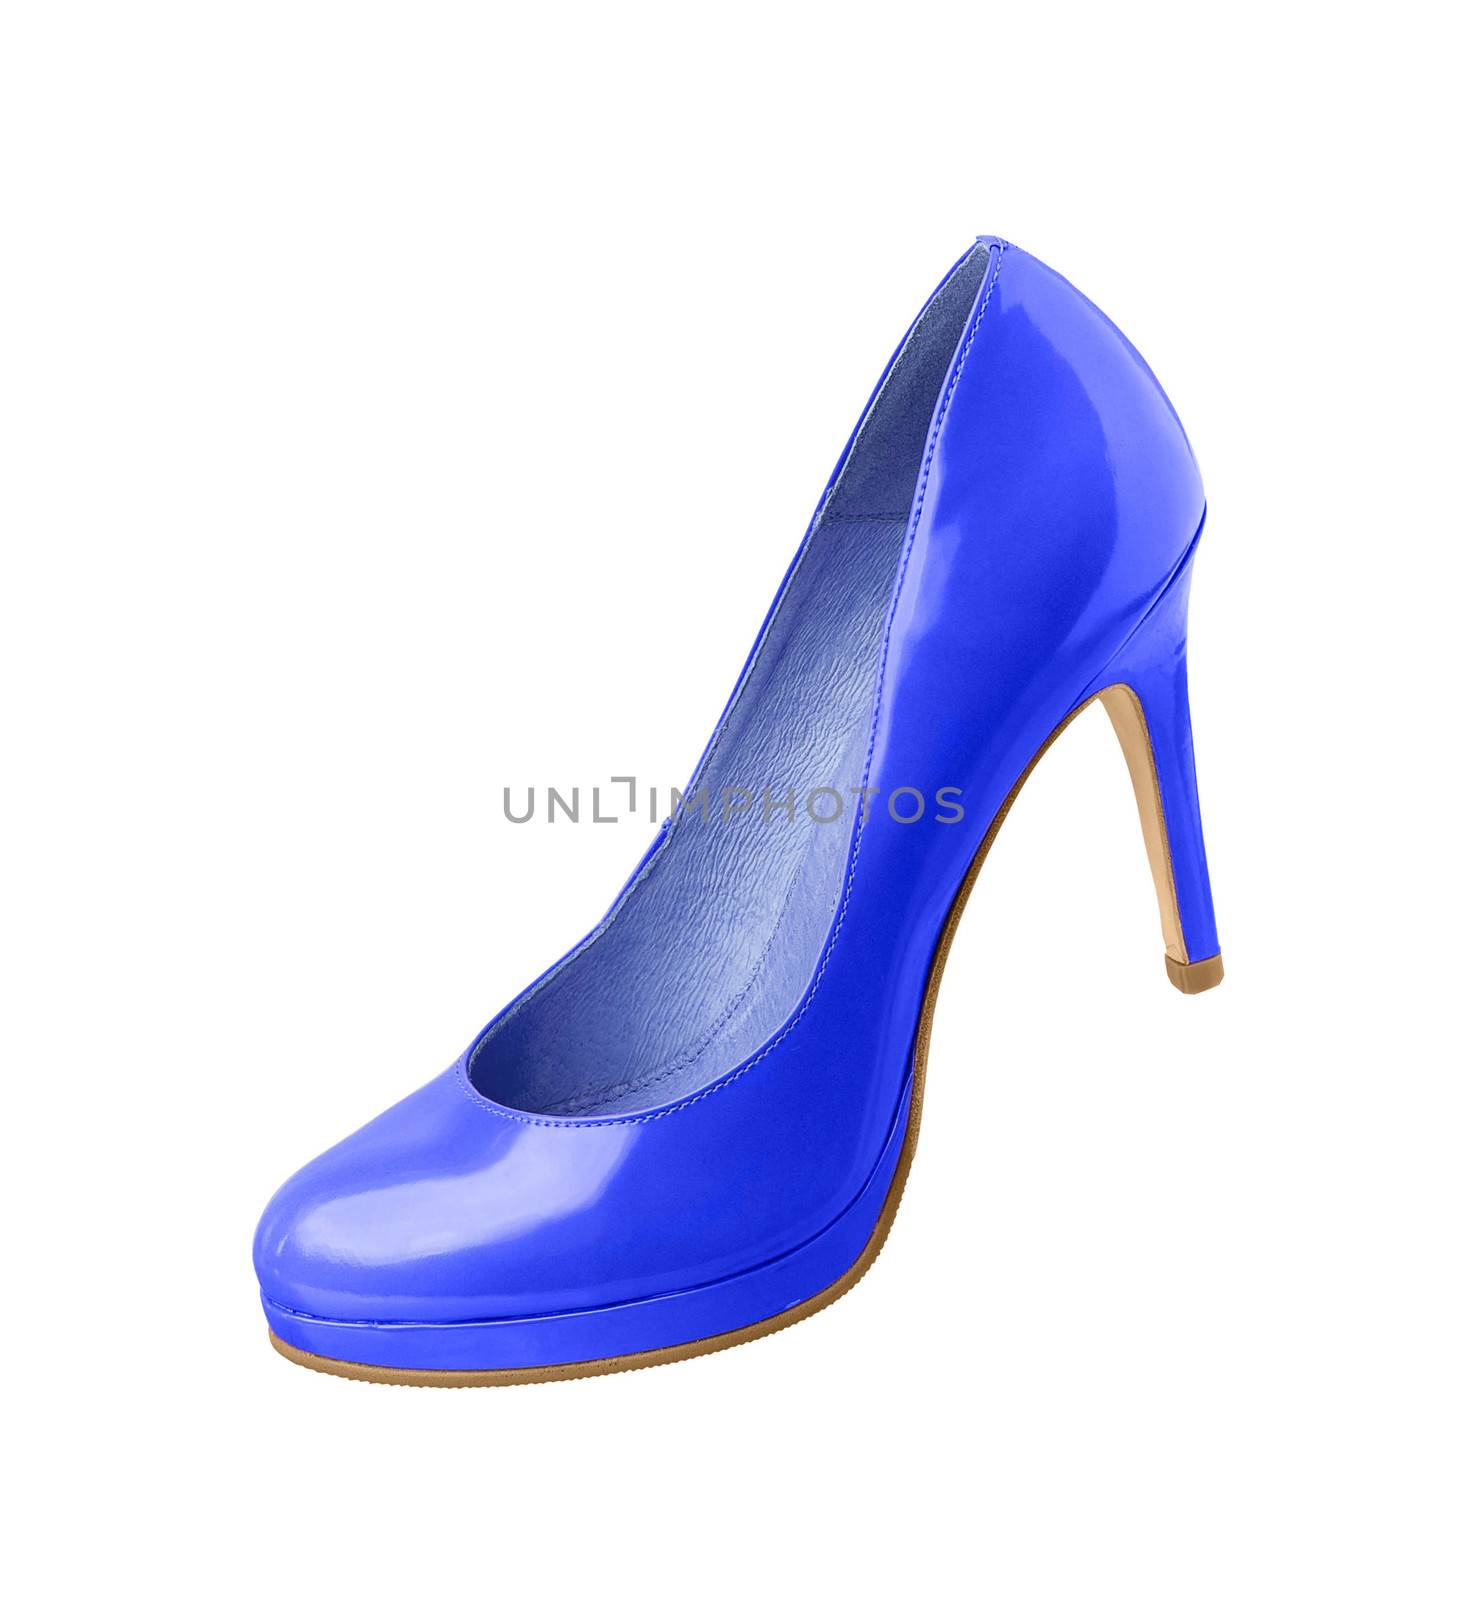 blue medium heeled shoe isolated